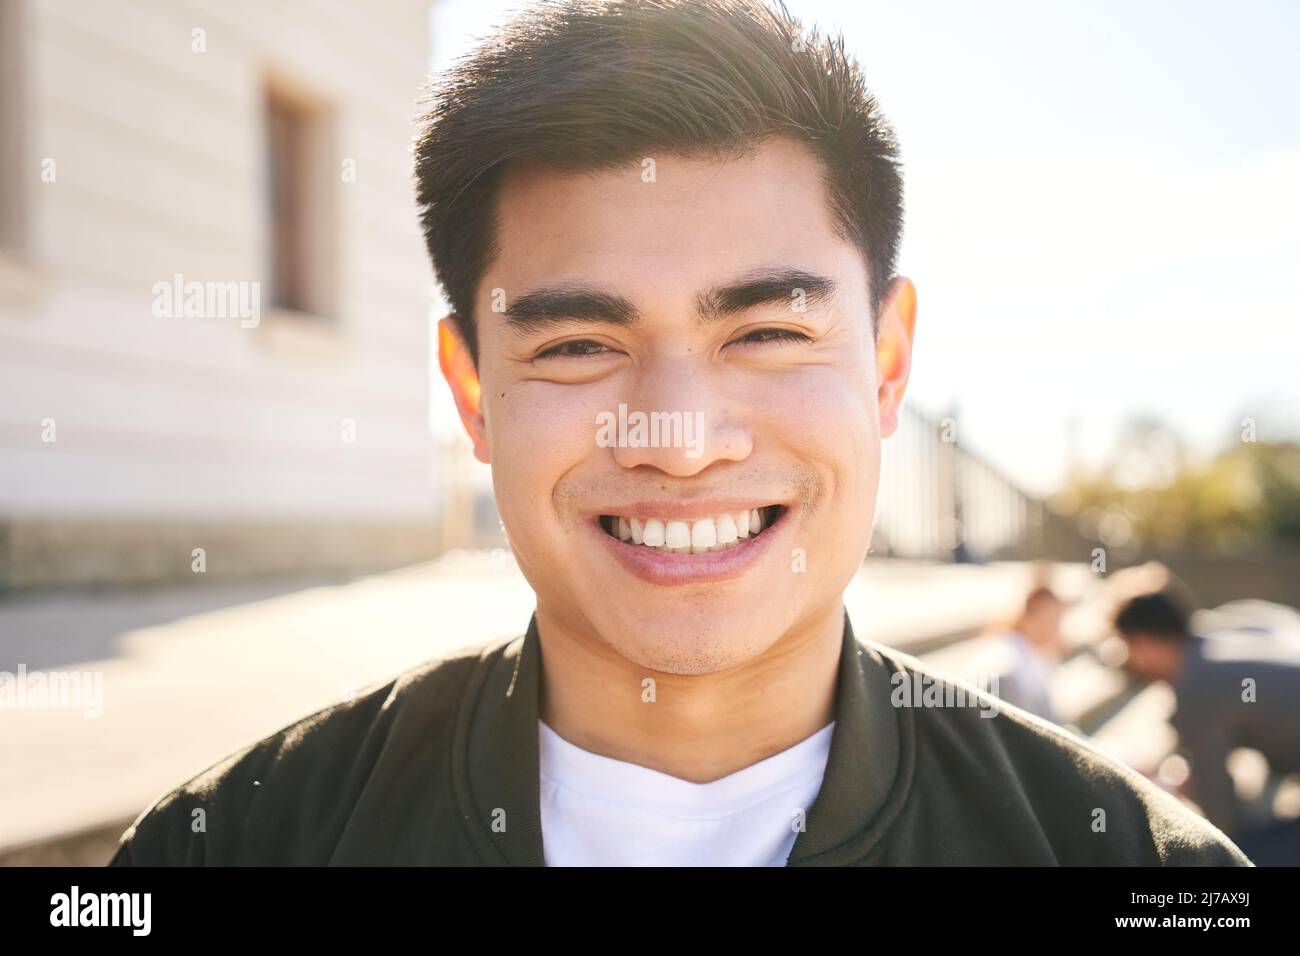 Außenportrait eines lächelnden Chinesen, der die Kamera anschaut und mit positivem Gesicht und freundlichem Aussehen lacht. Nahaufnahme eines glücklichen menschlichen Gesichts - Stockfoto